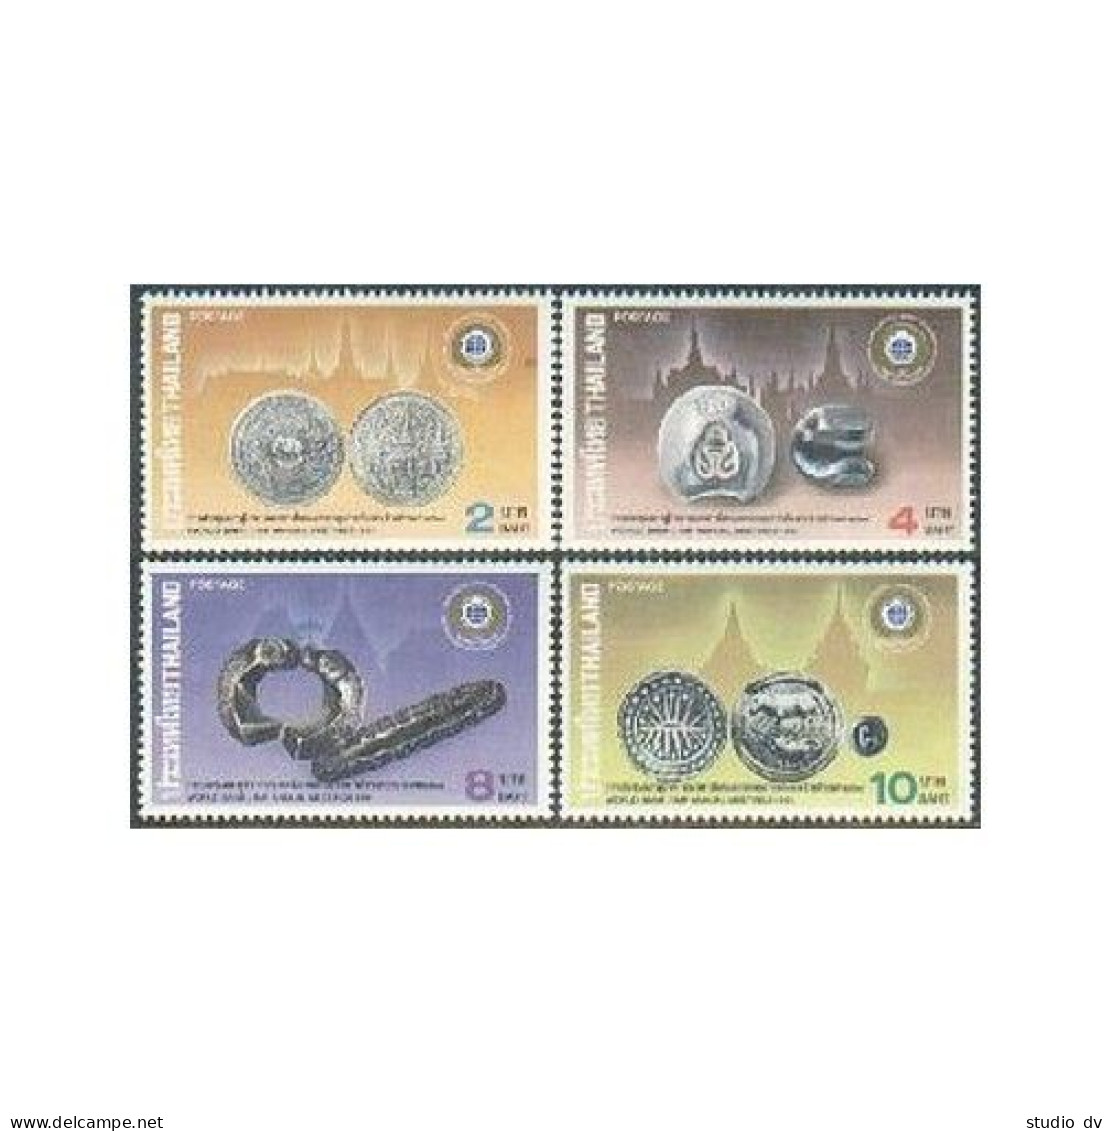 Thailand 1406-1409,MNH.Michel 1427-1430. World Bank 1991.Coins,Animals. - Thailand